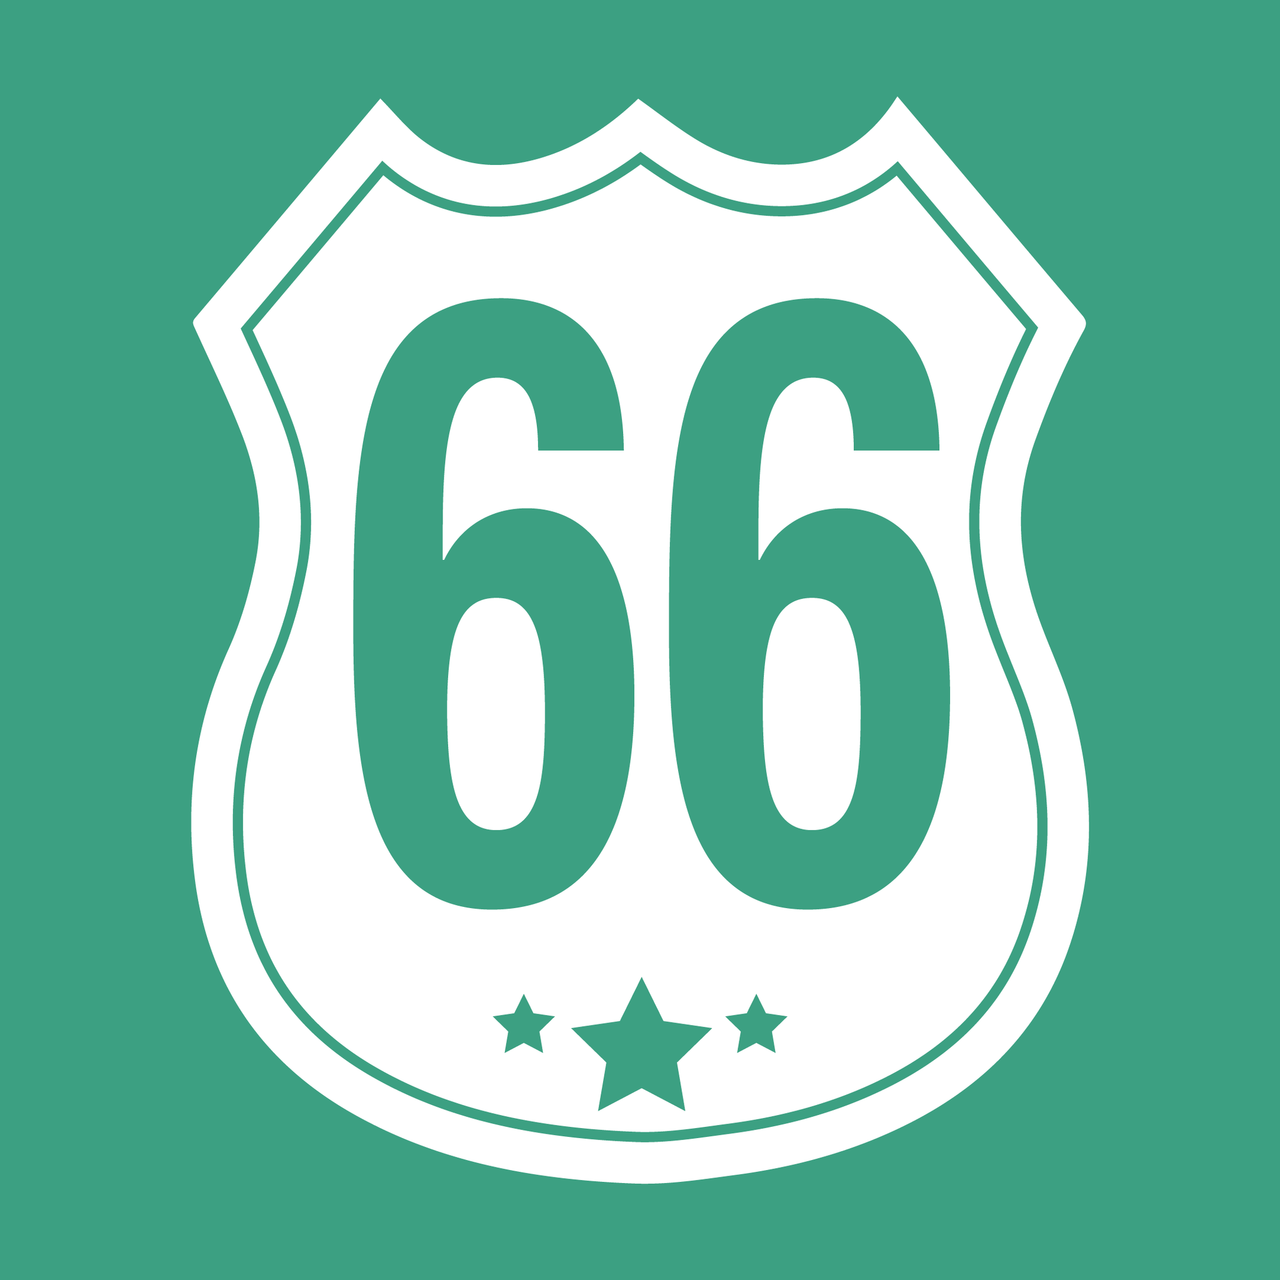 Wheelie Bin Decals - Route 66 design